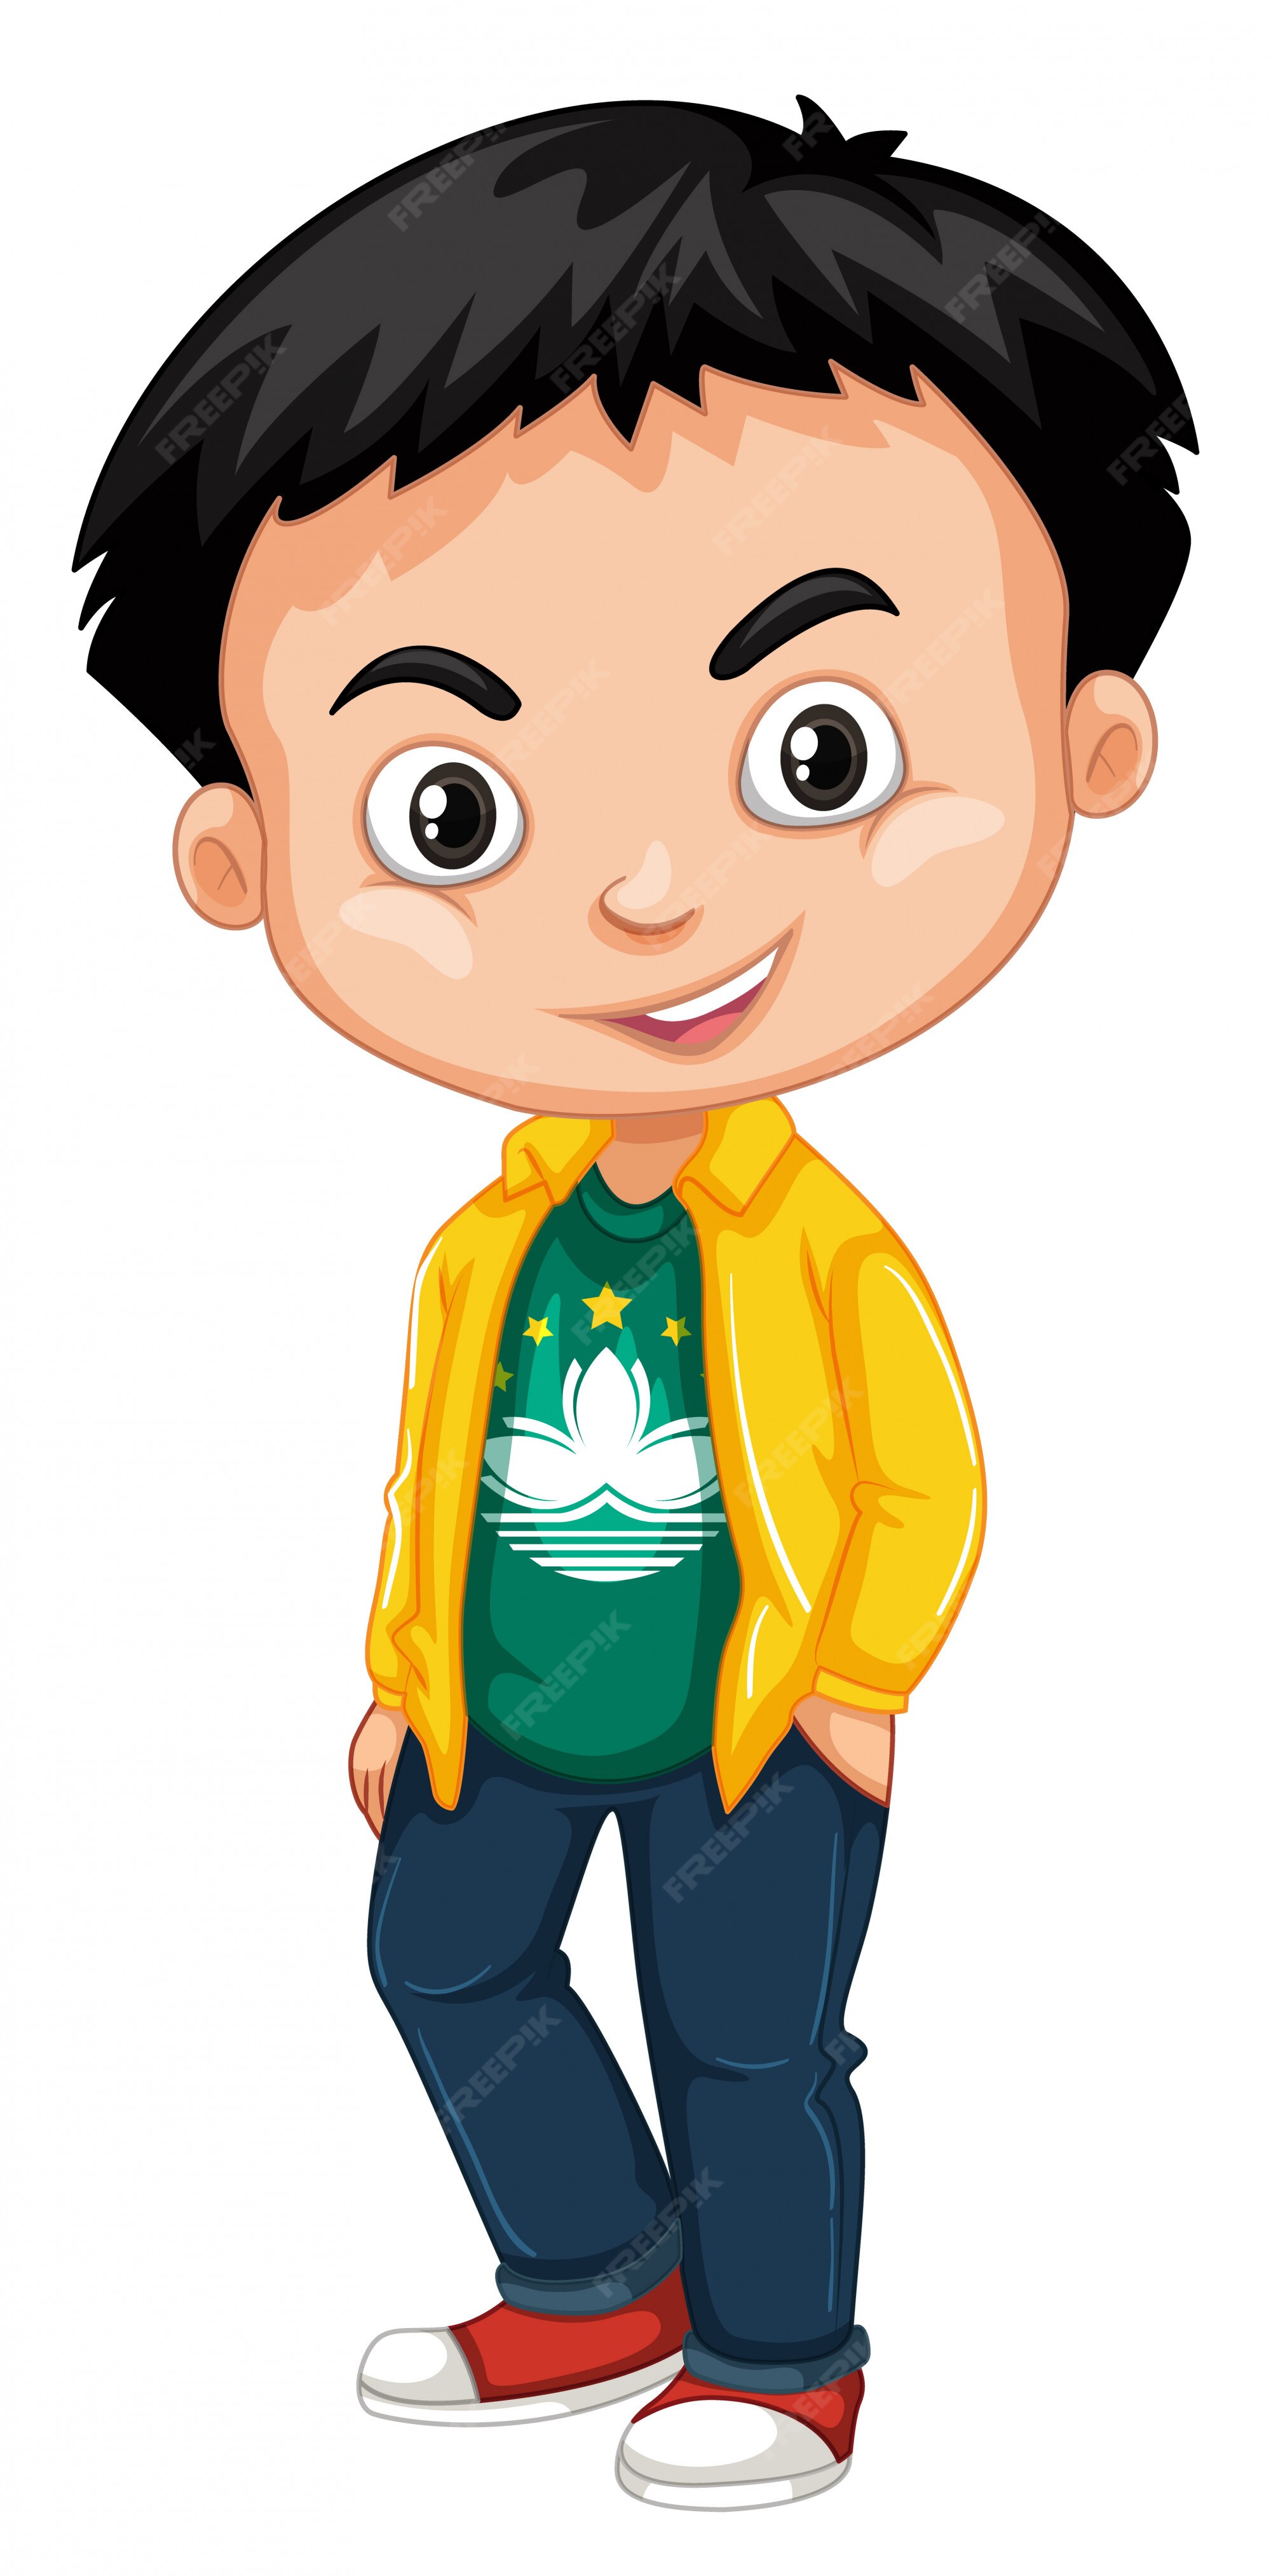 Asian Boy Cartoon Images - Free Download on Freepik